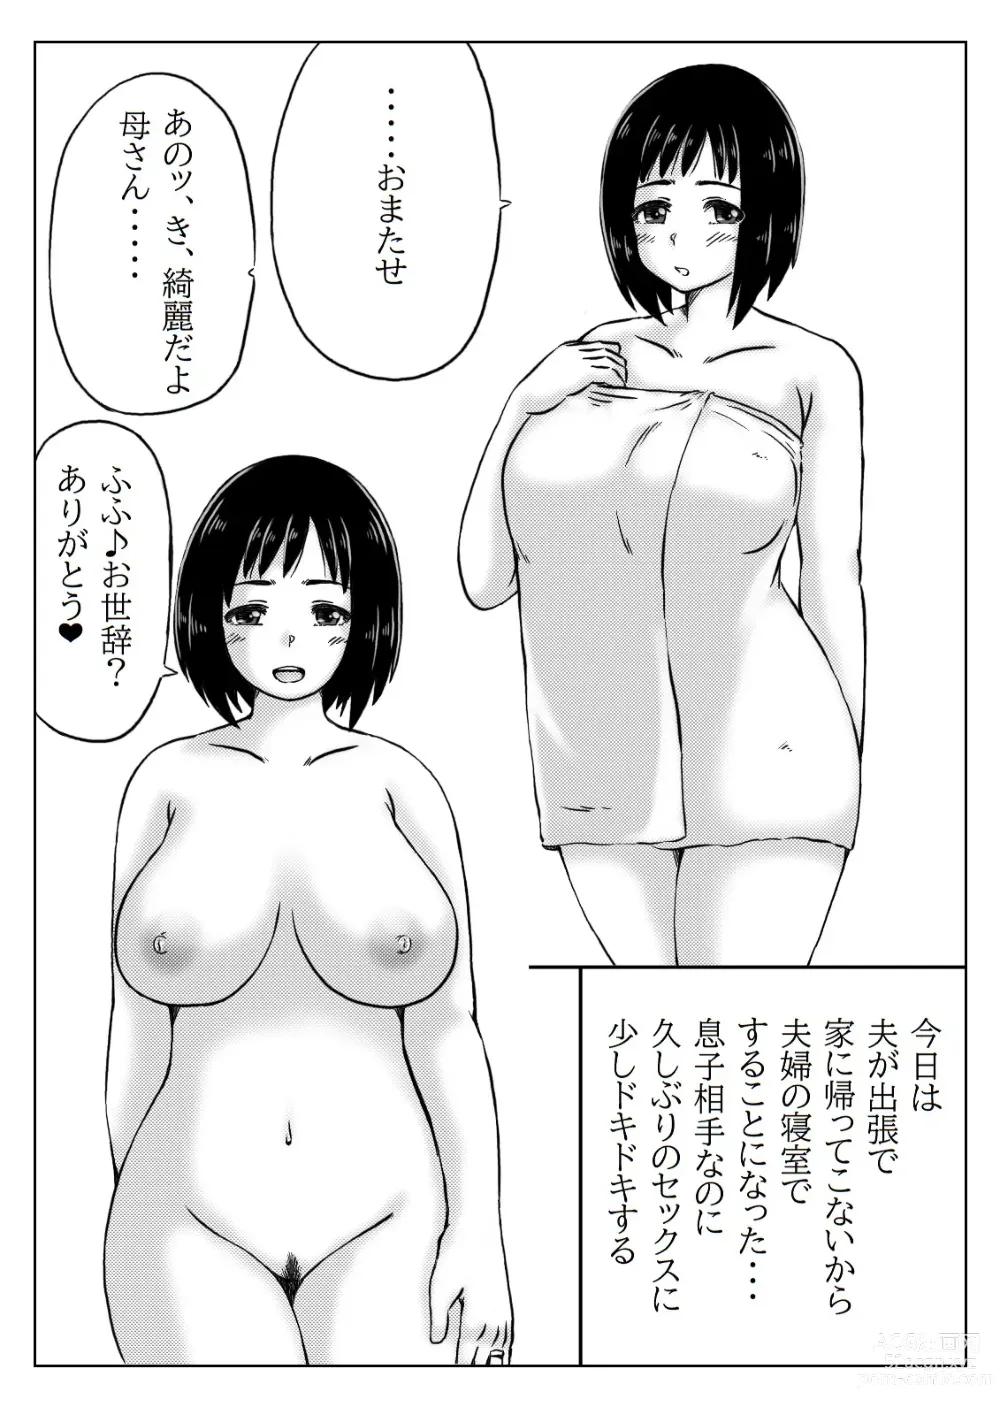 Page 7 of doujinshi Haha to Jibun wo Kaetai Musuko